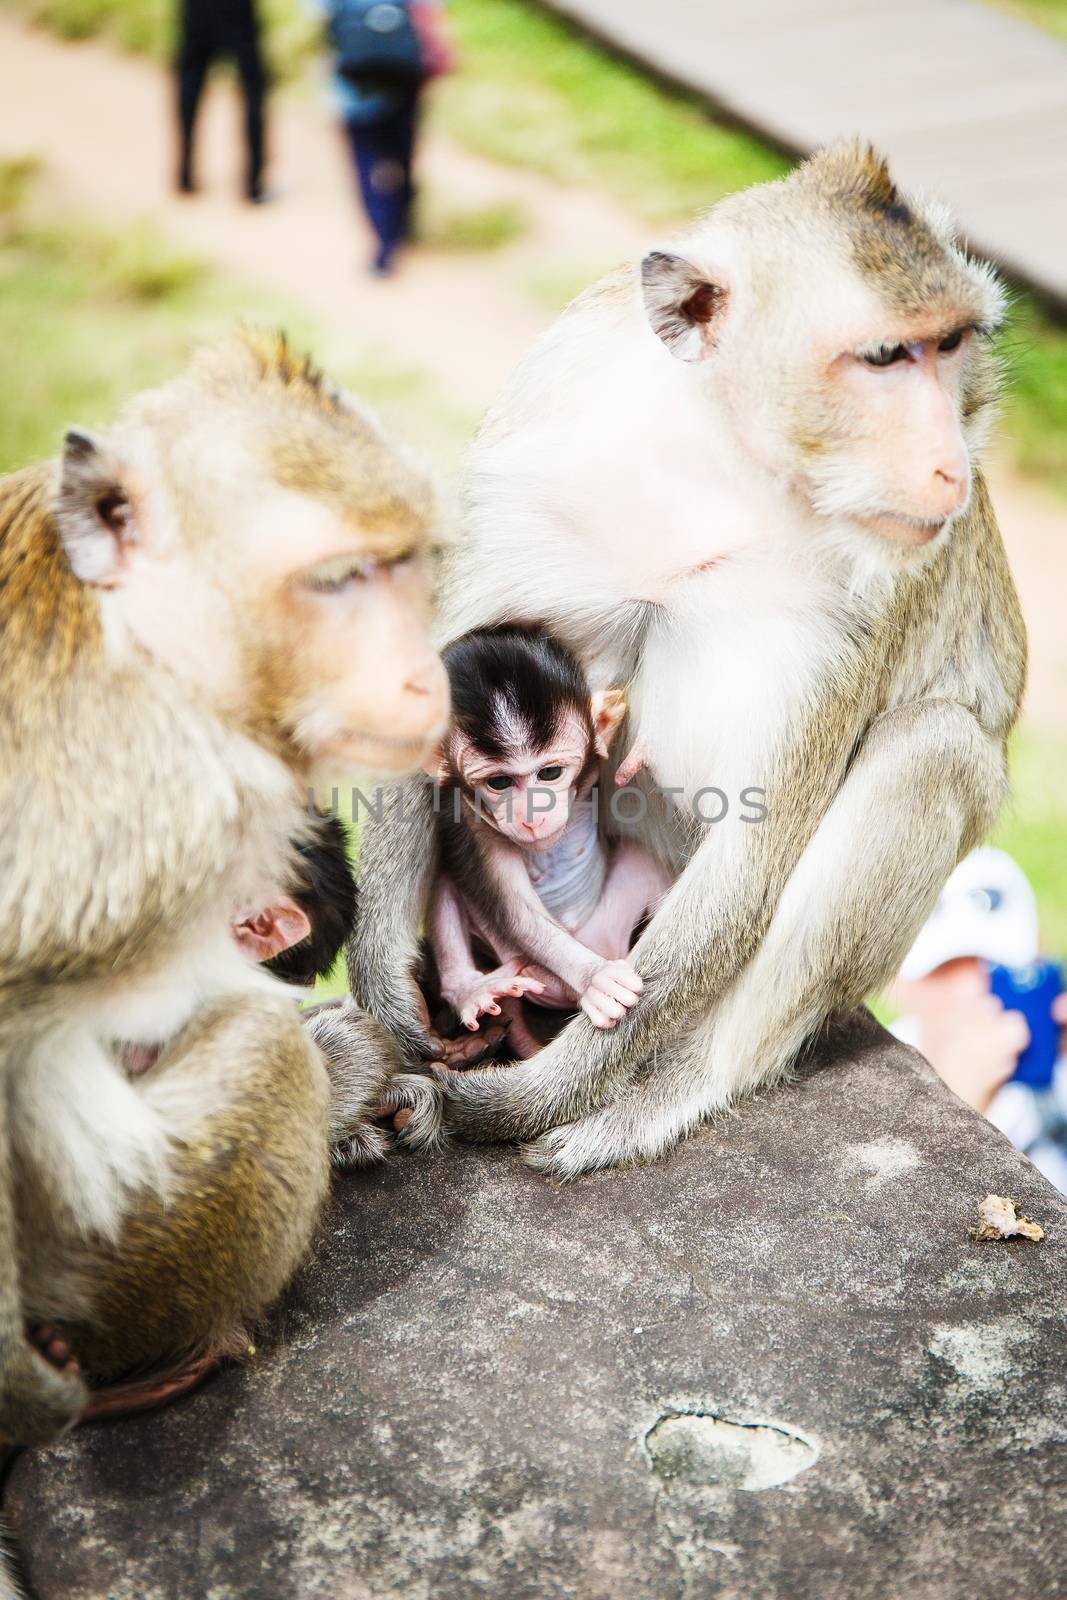 Family of monkeys by gorov108